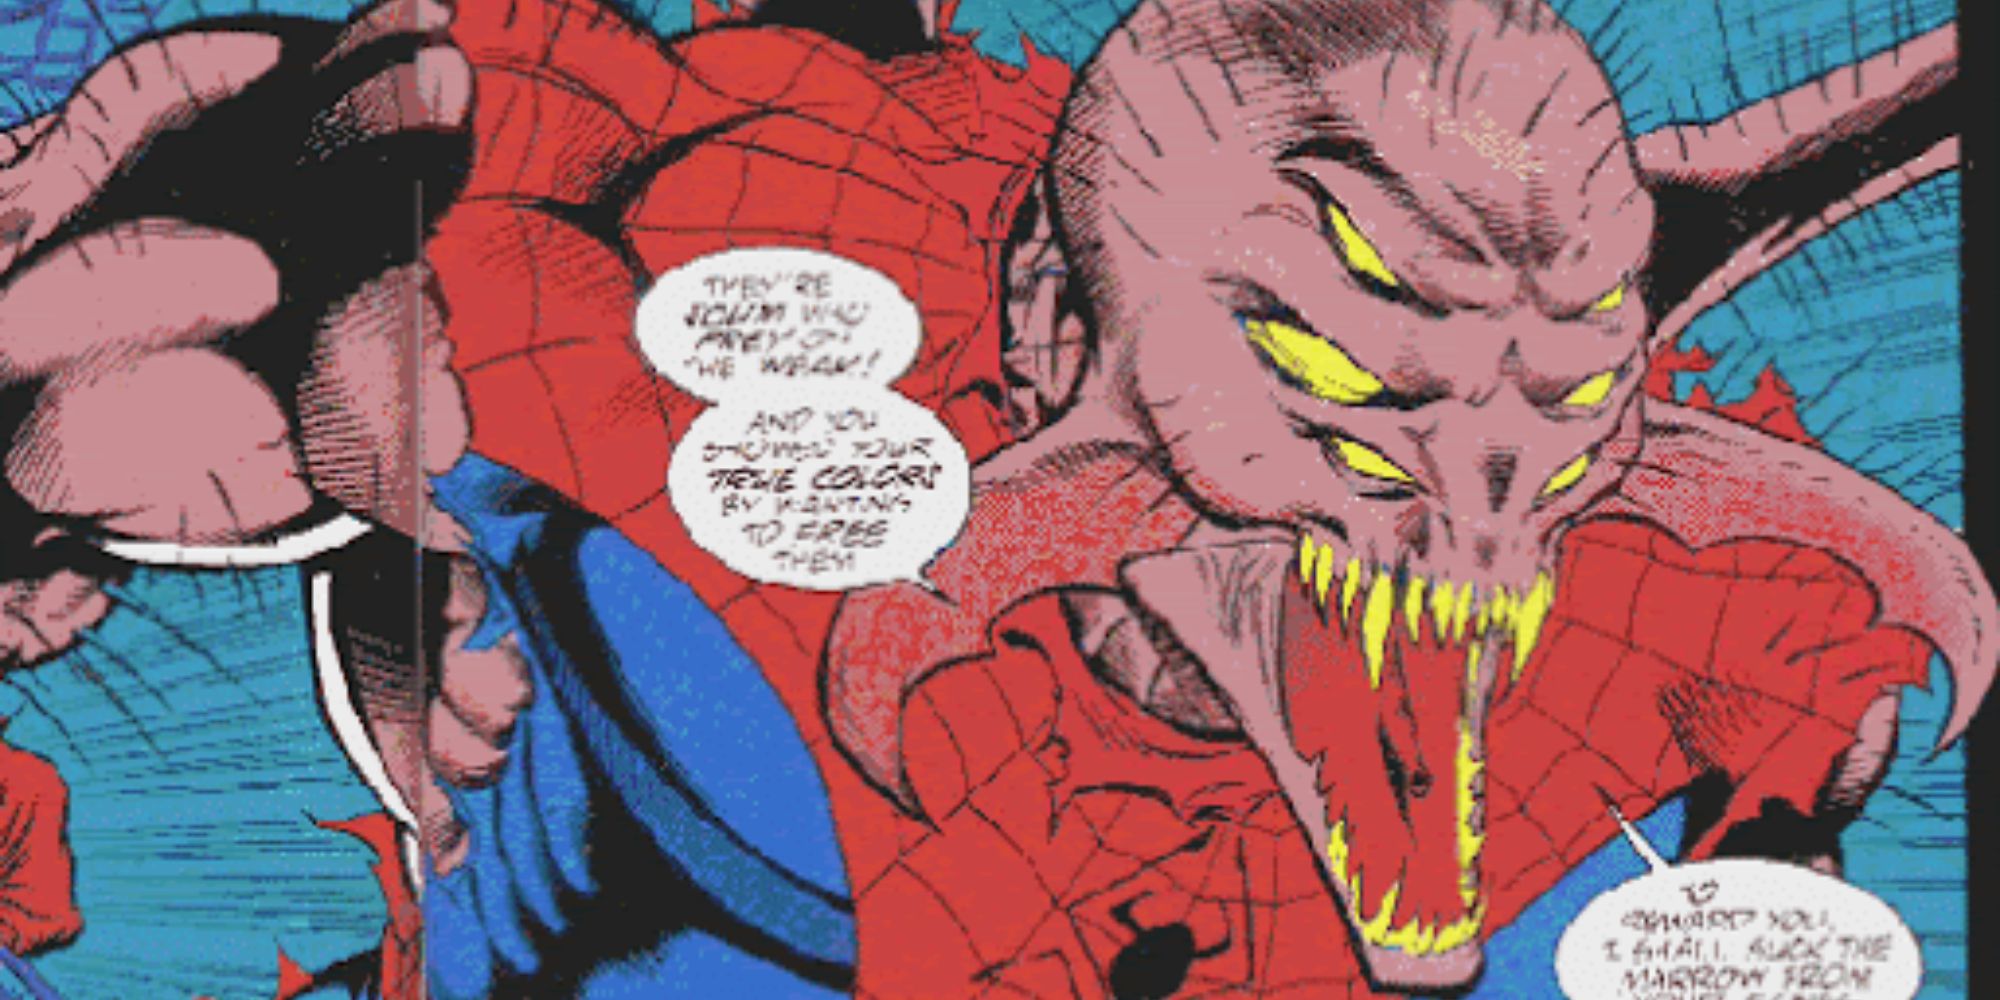 Spider-X in a battle scene